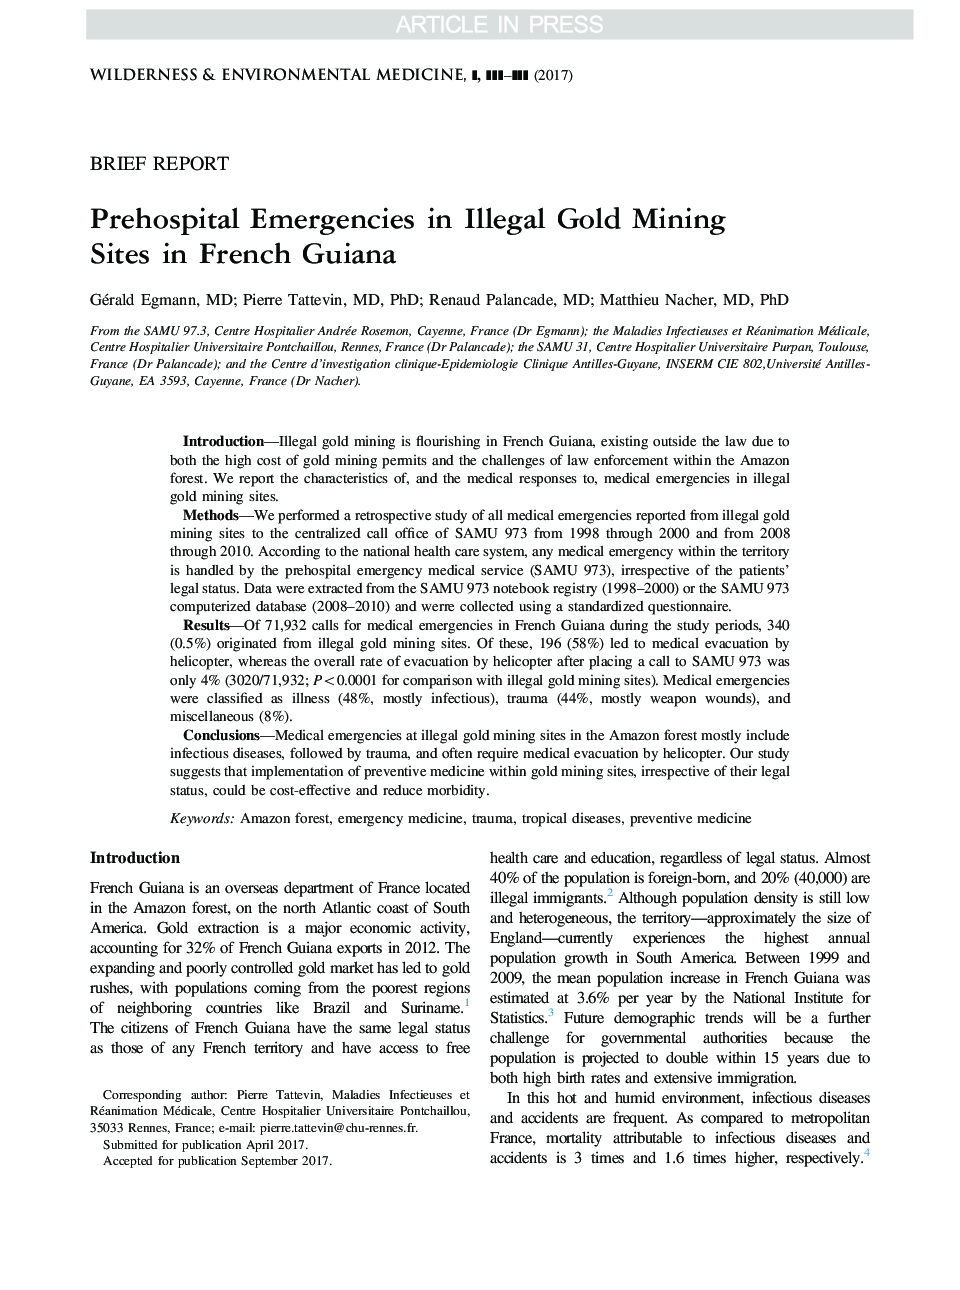 اورژانس پیش از زایمان در غیر قانونی سایت های معدن طلا در گینه فرانسه 